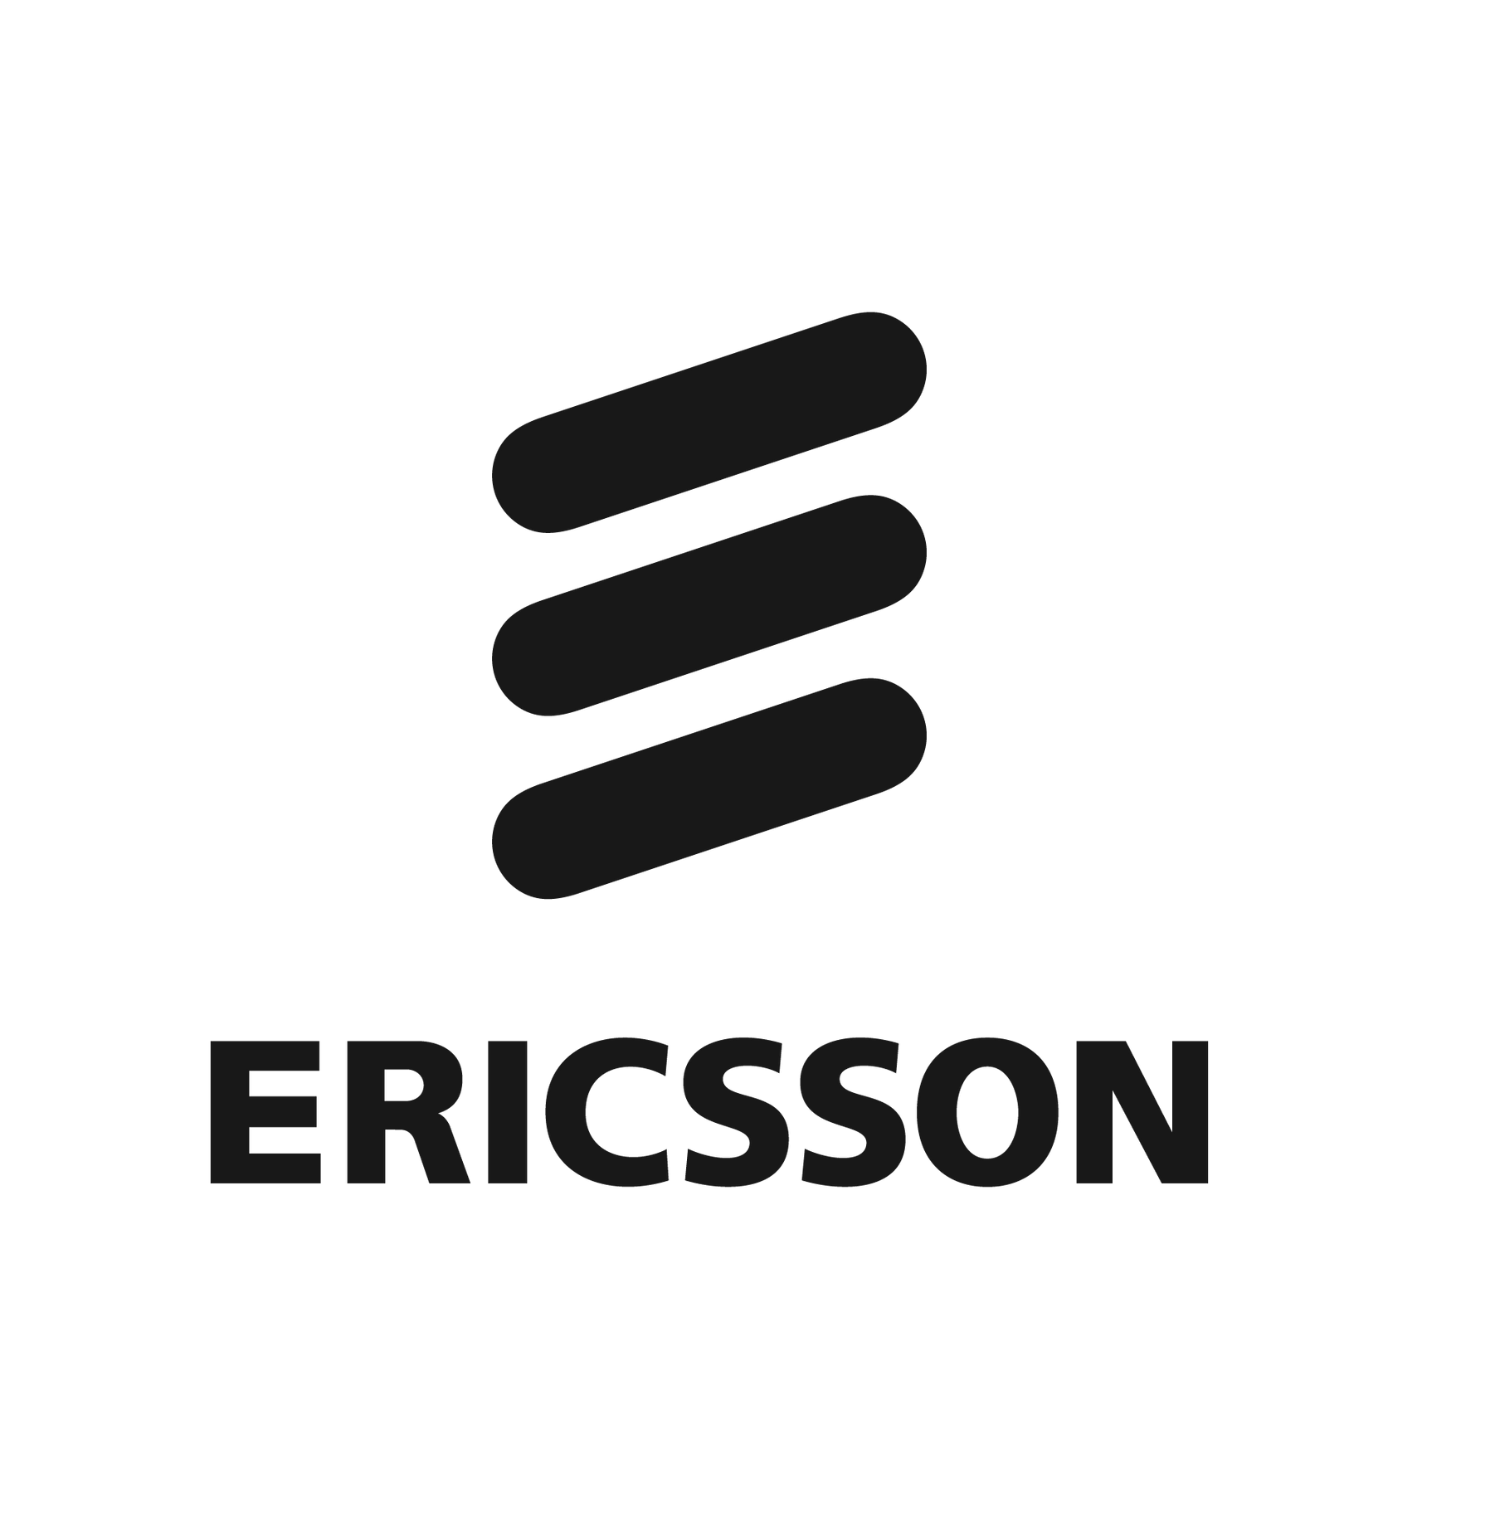 LARGE - Ericsson_1